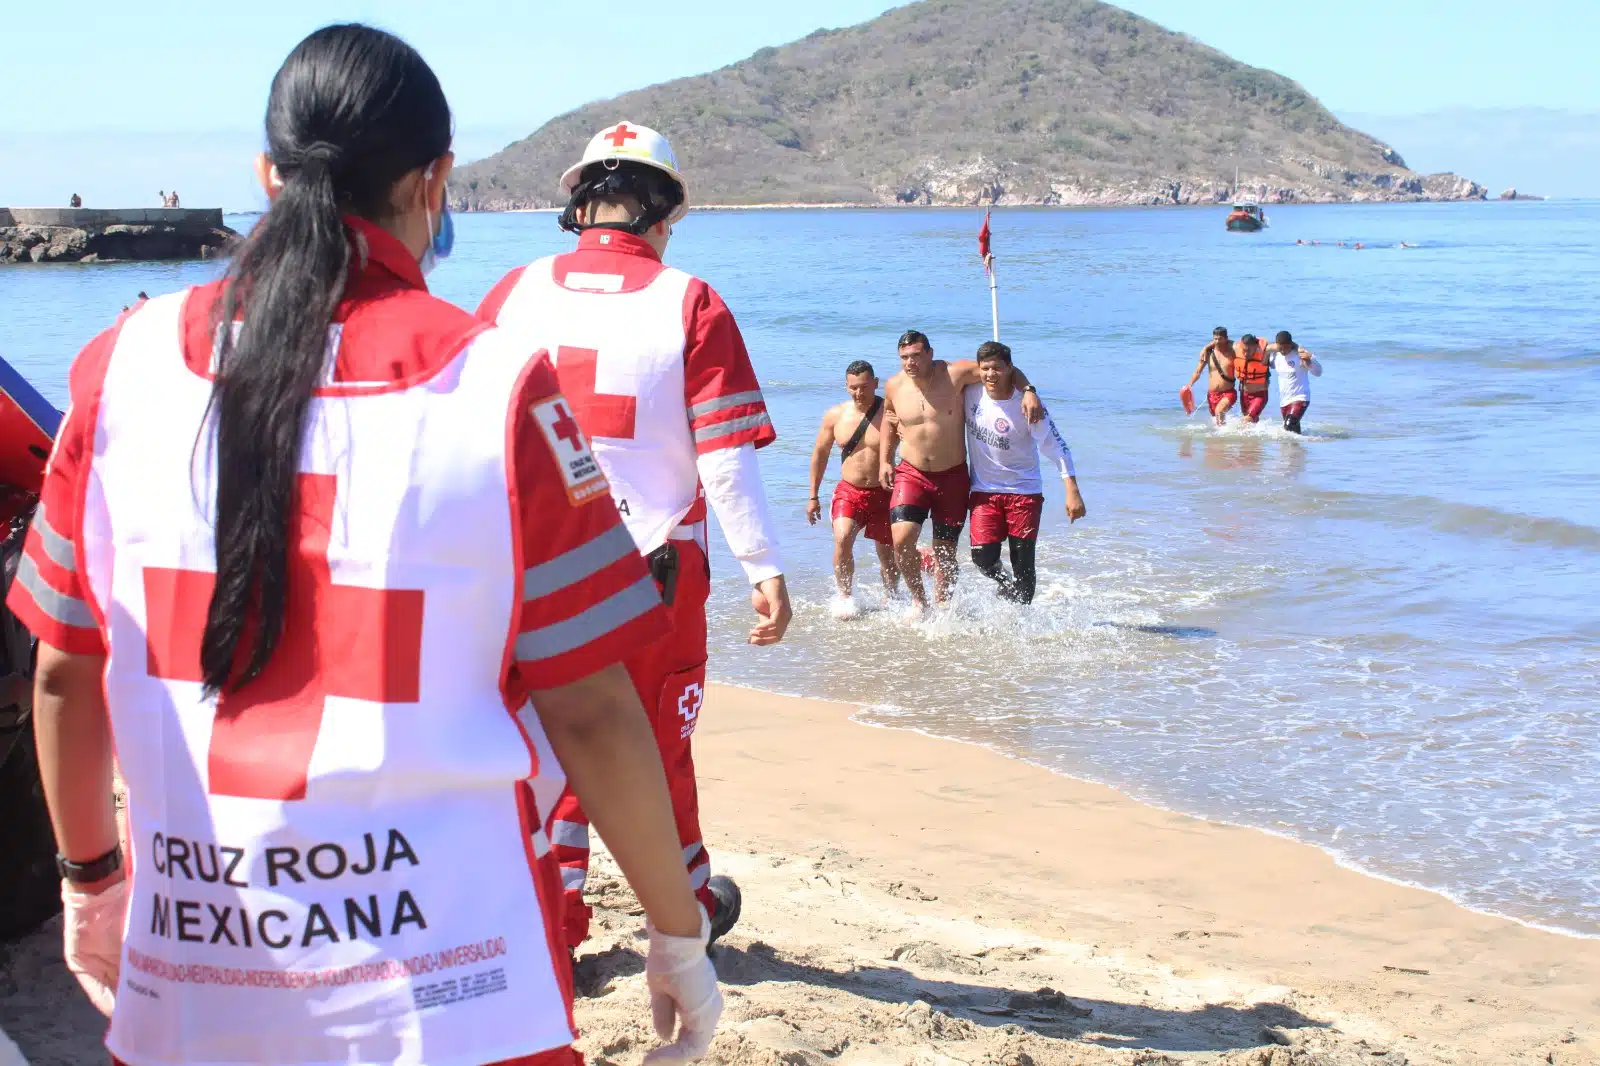 Cruz Roja Salvavidas Rescate Mazatlán